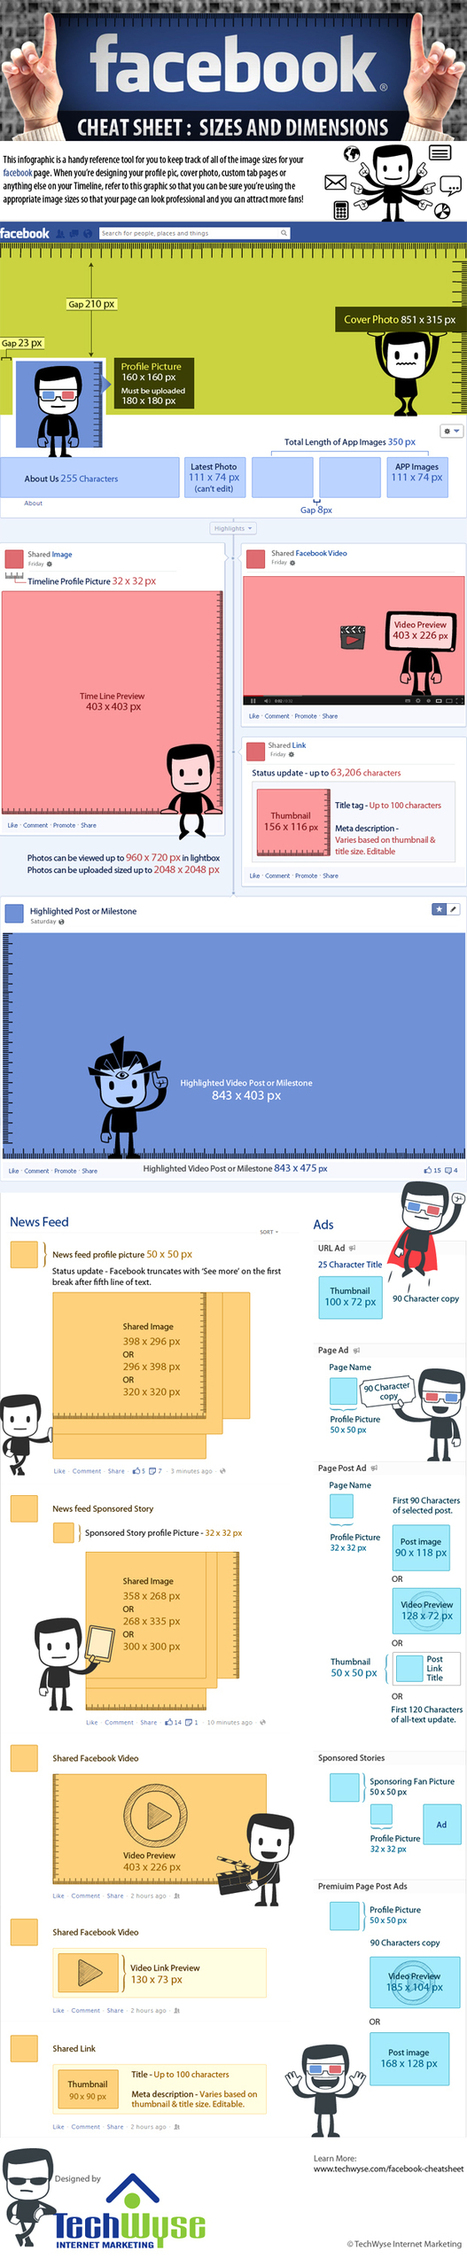 [infographie] Tailles des visuels sur Facebook | Boite à outils blog | Scoop.it